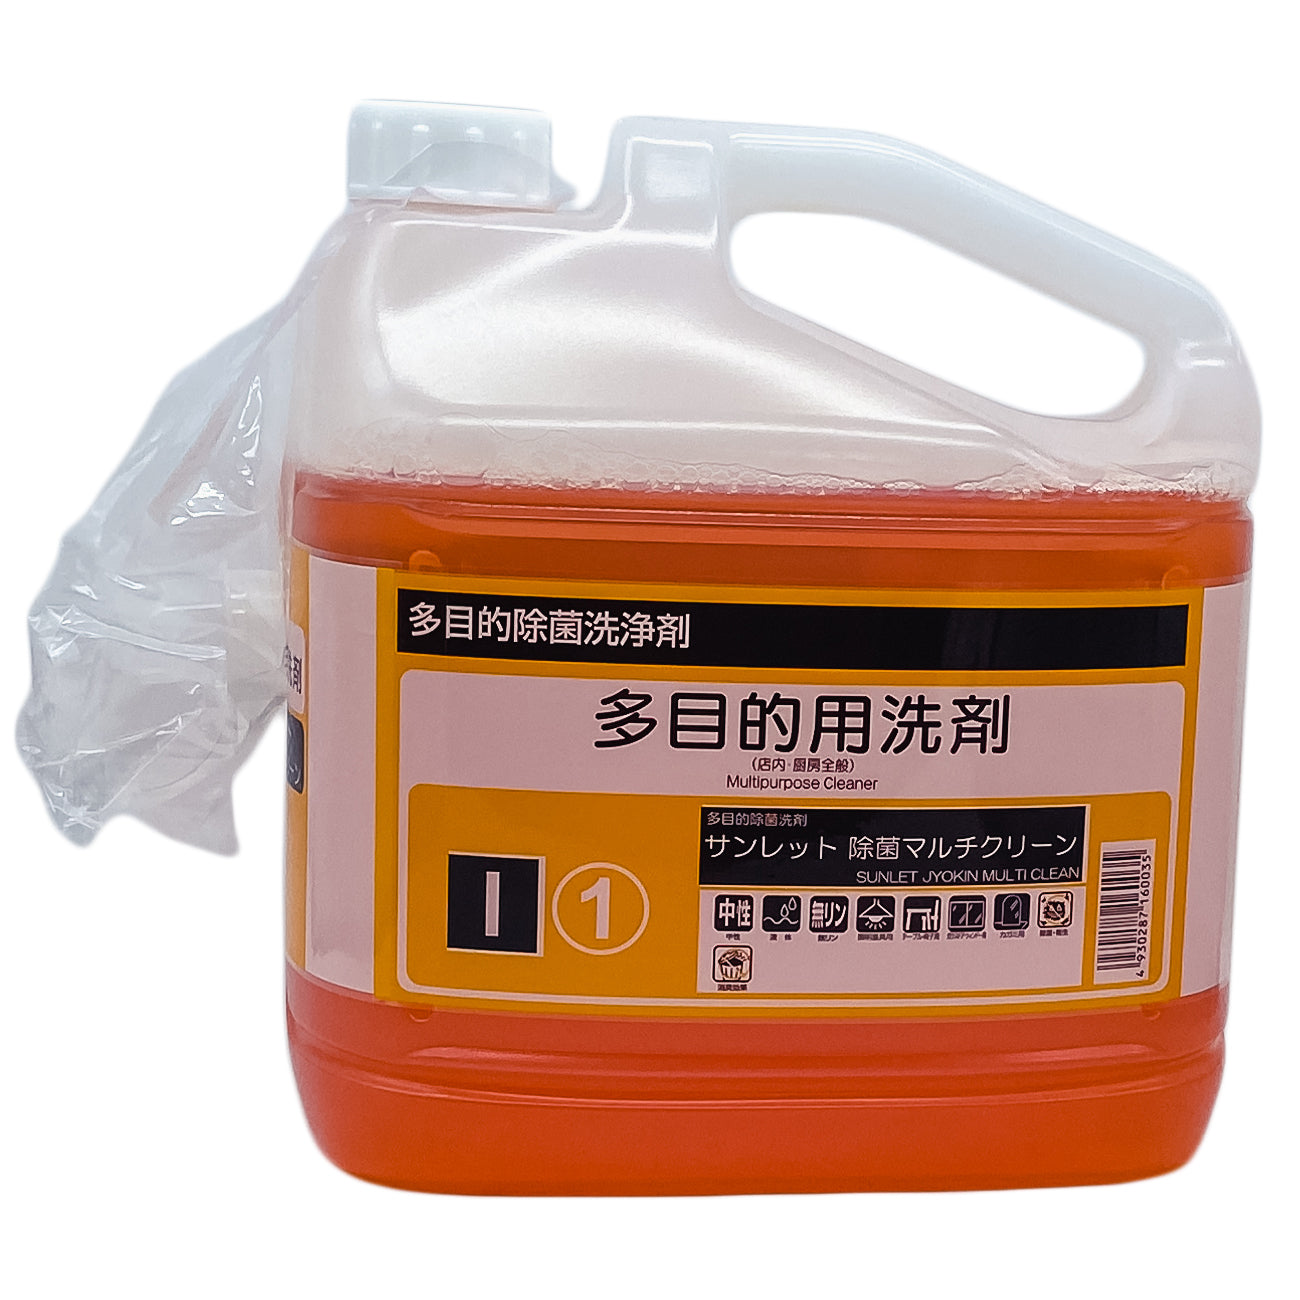 【多目的除菌中性洗剤】静光産業 サンレット 除菌マルチクリーン 4.5kg